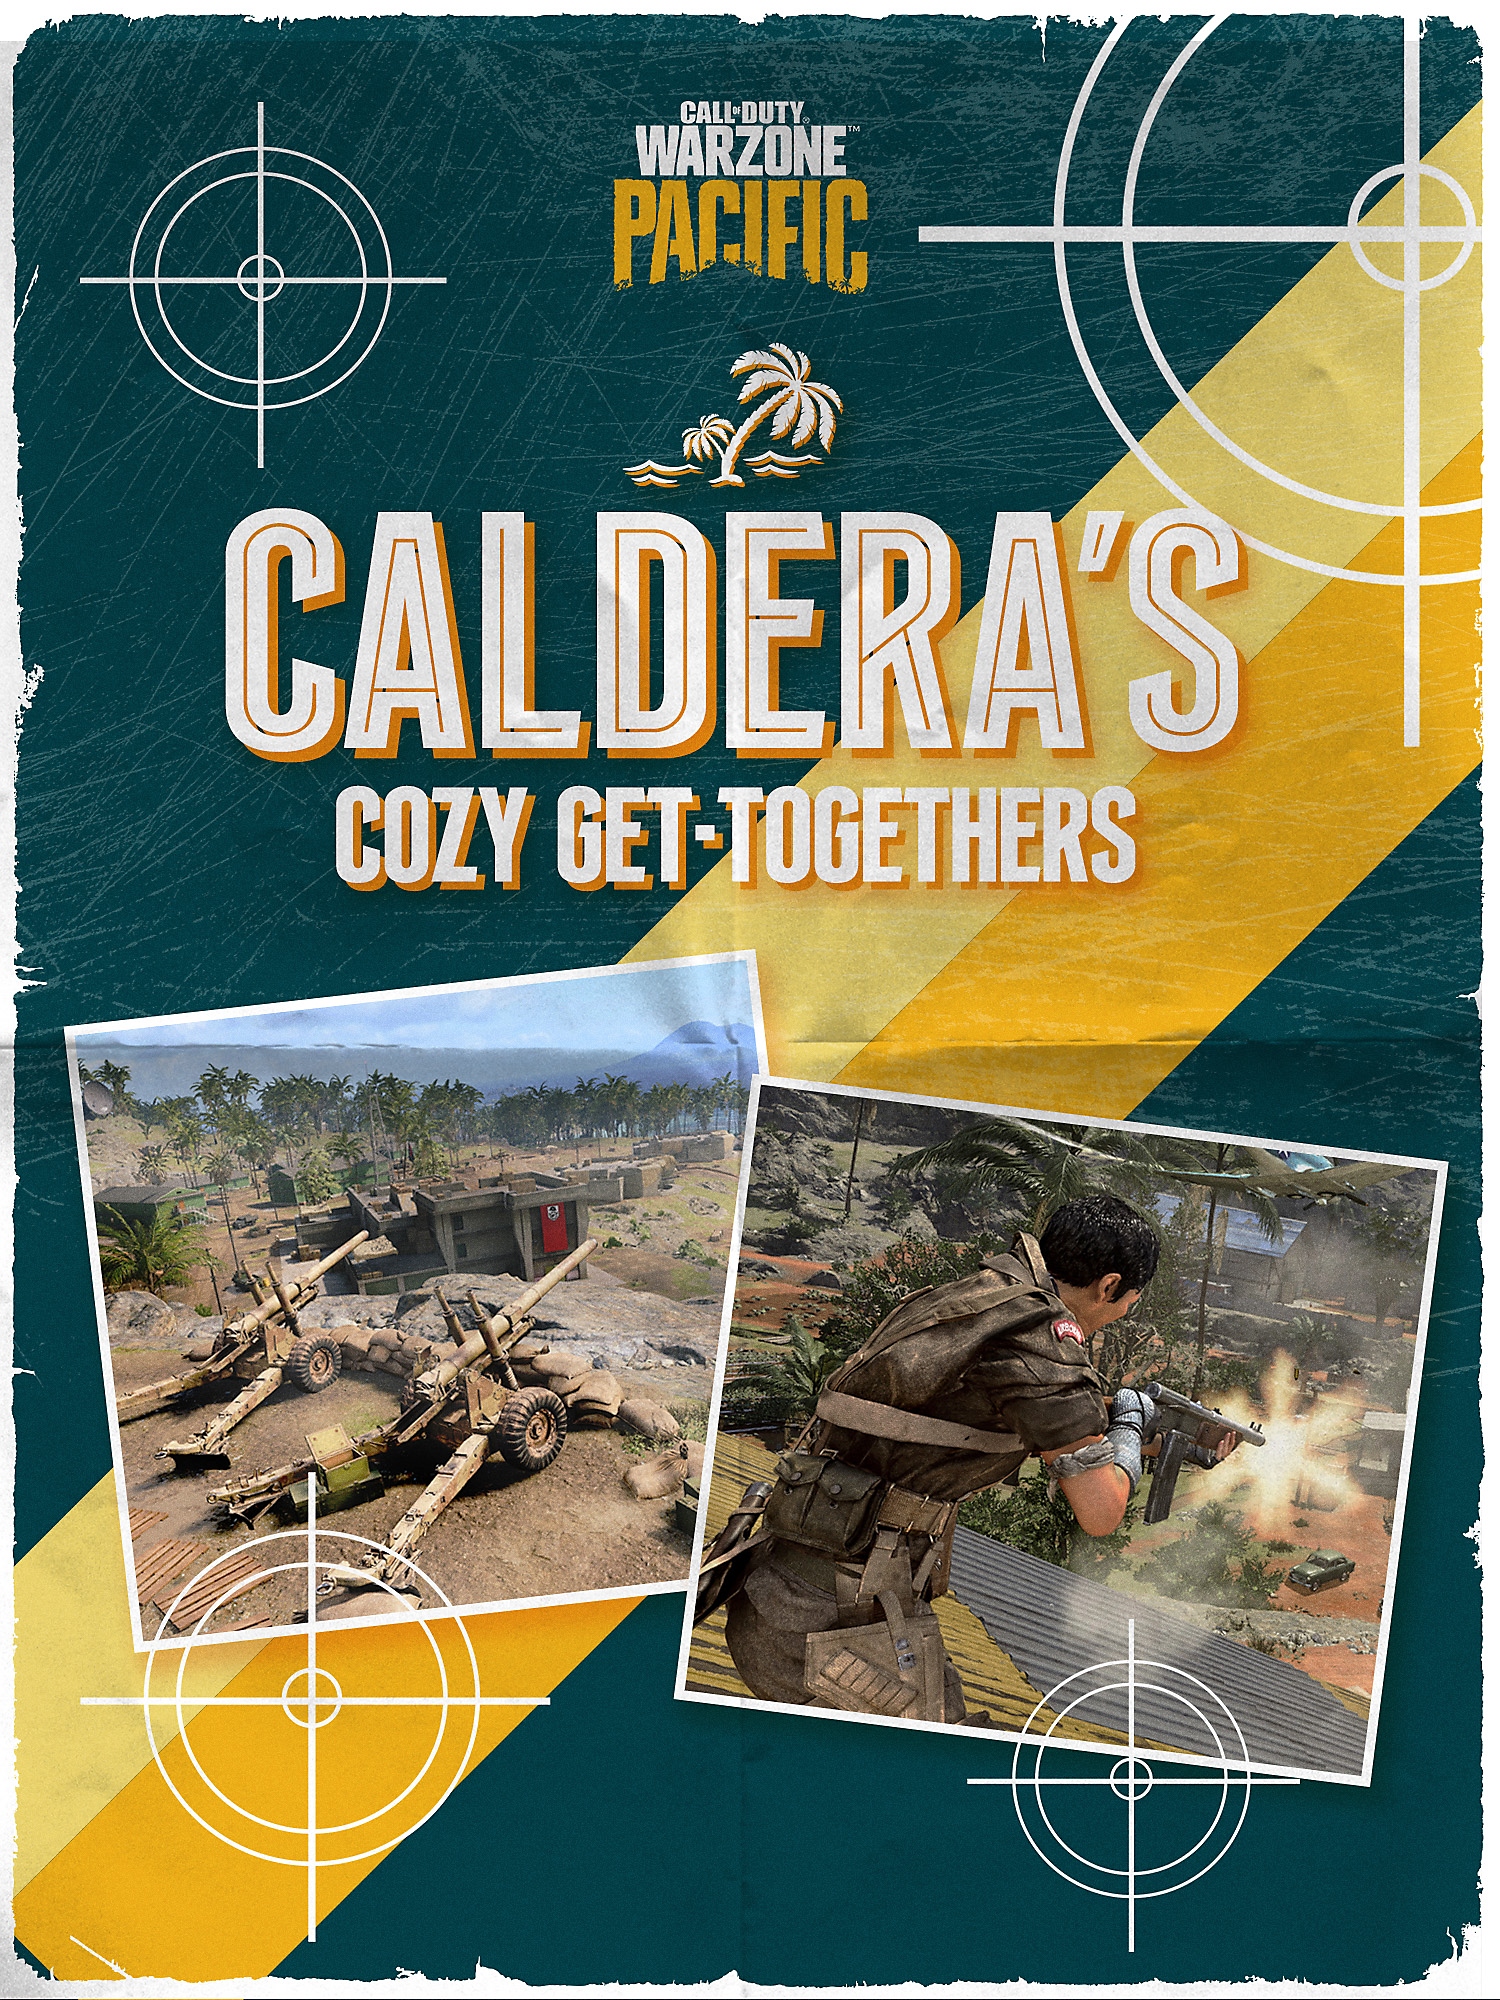 Naslovnica brošure o Calderi – ugodna druženja